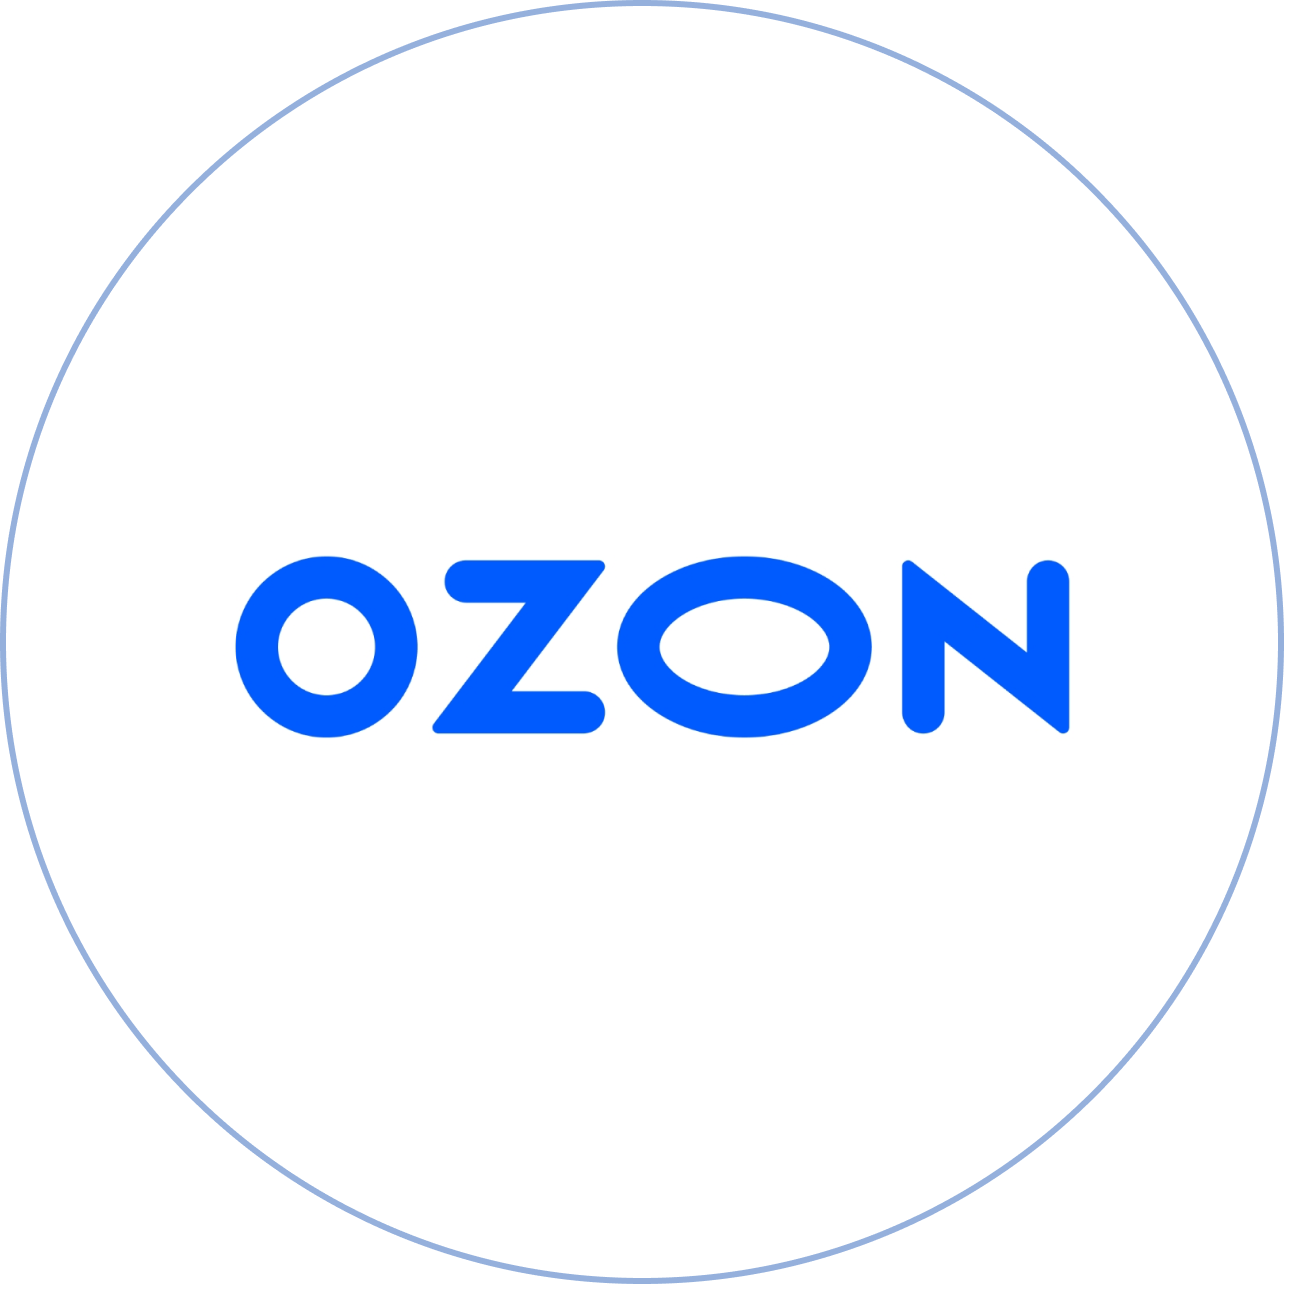 Озон логотип. Магазин Озон логотип. Логотип Озон без фона. Надпись Озон.